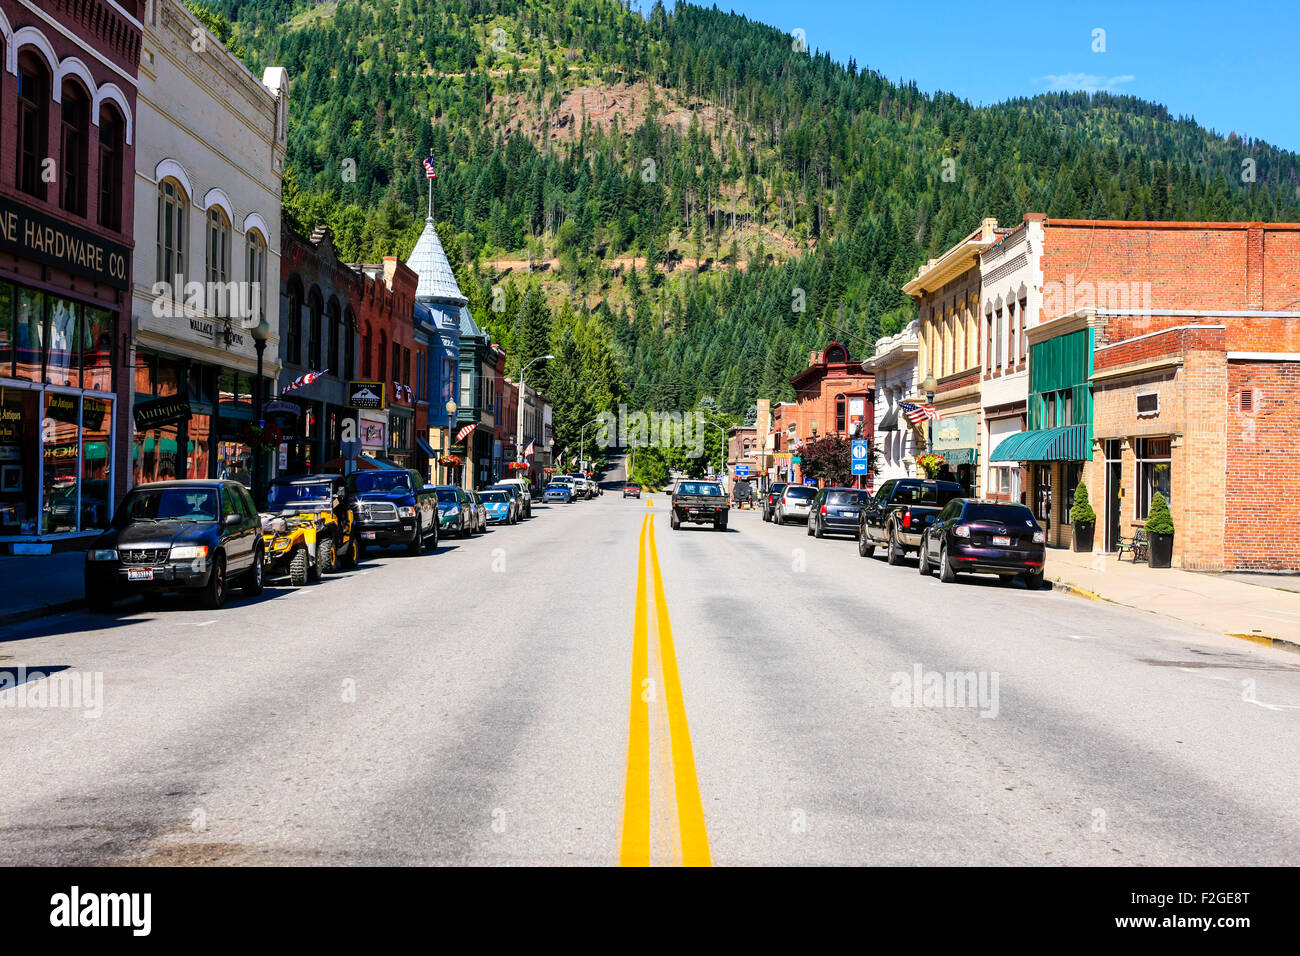 La città storica di Wallace nella regione di Panhandle e la Silver Valley distretto minerario di Idaho Foto Stock